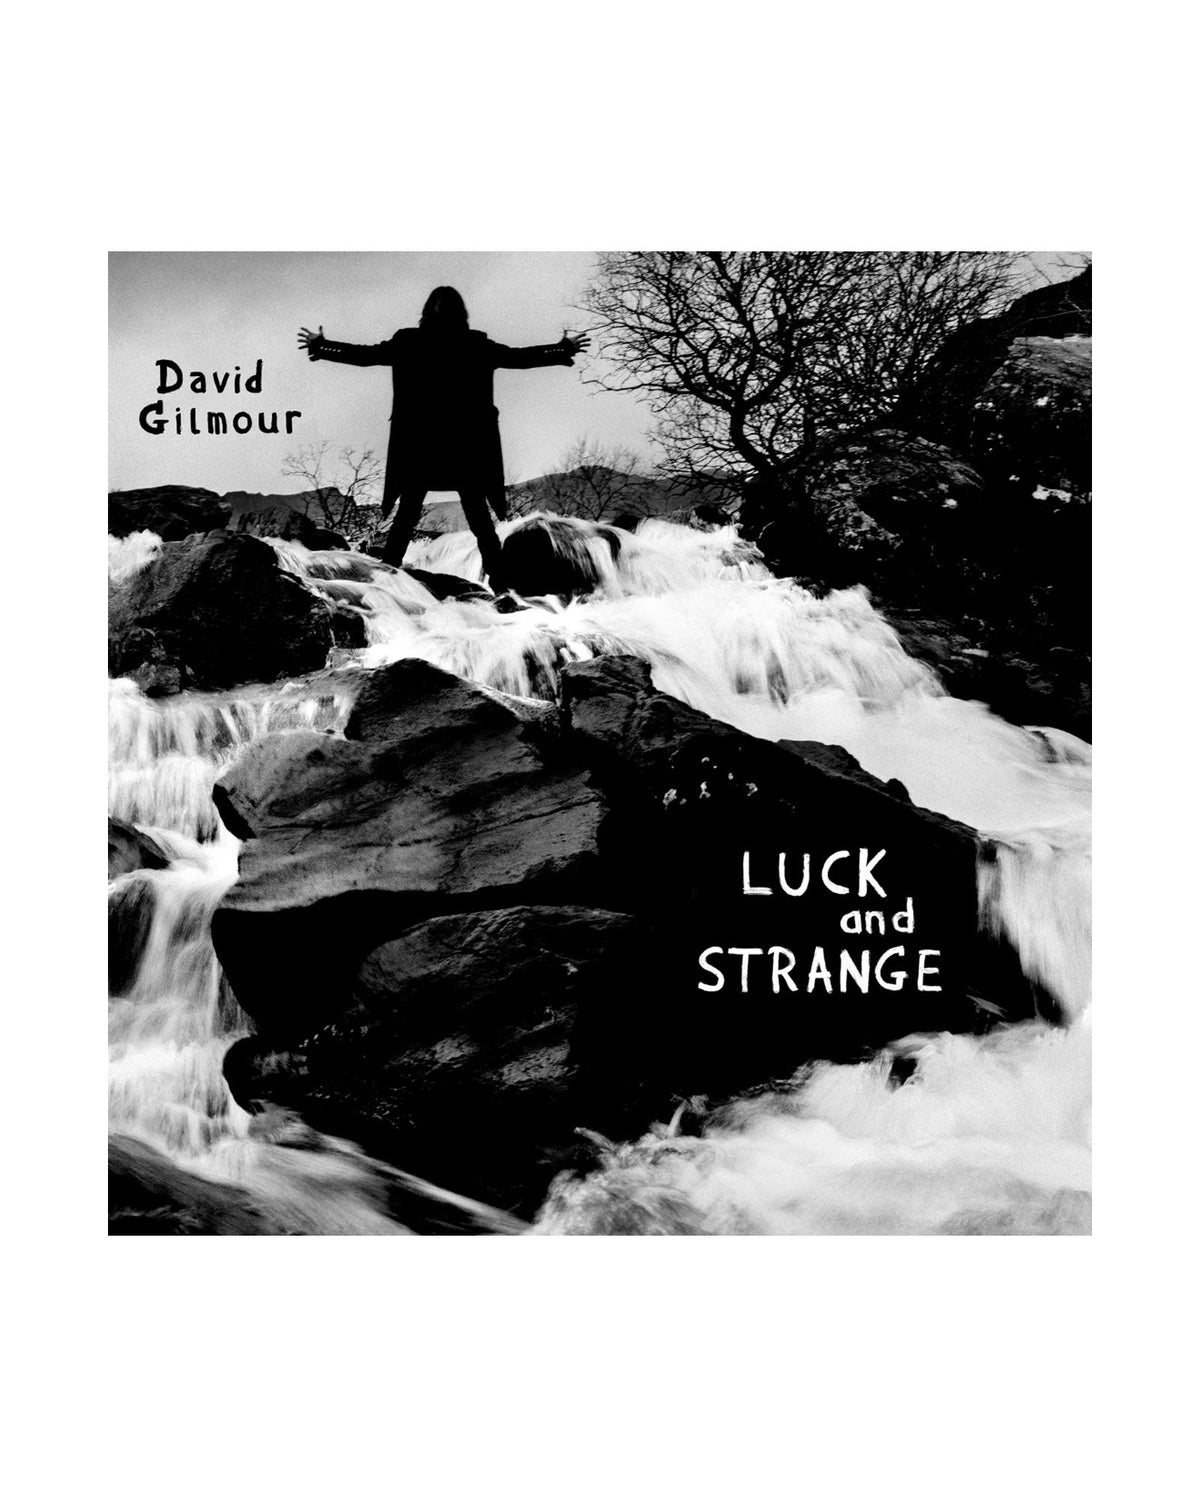 David Gilmour - LP Vinilo Azul Turquesa "Luck and Strange" - D2fy · Rocktud - Rocktud